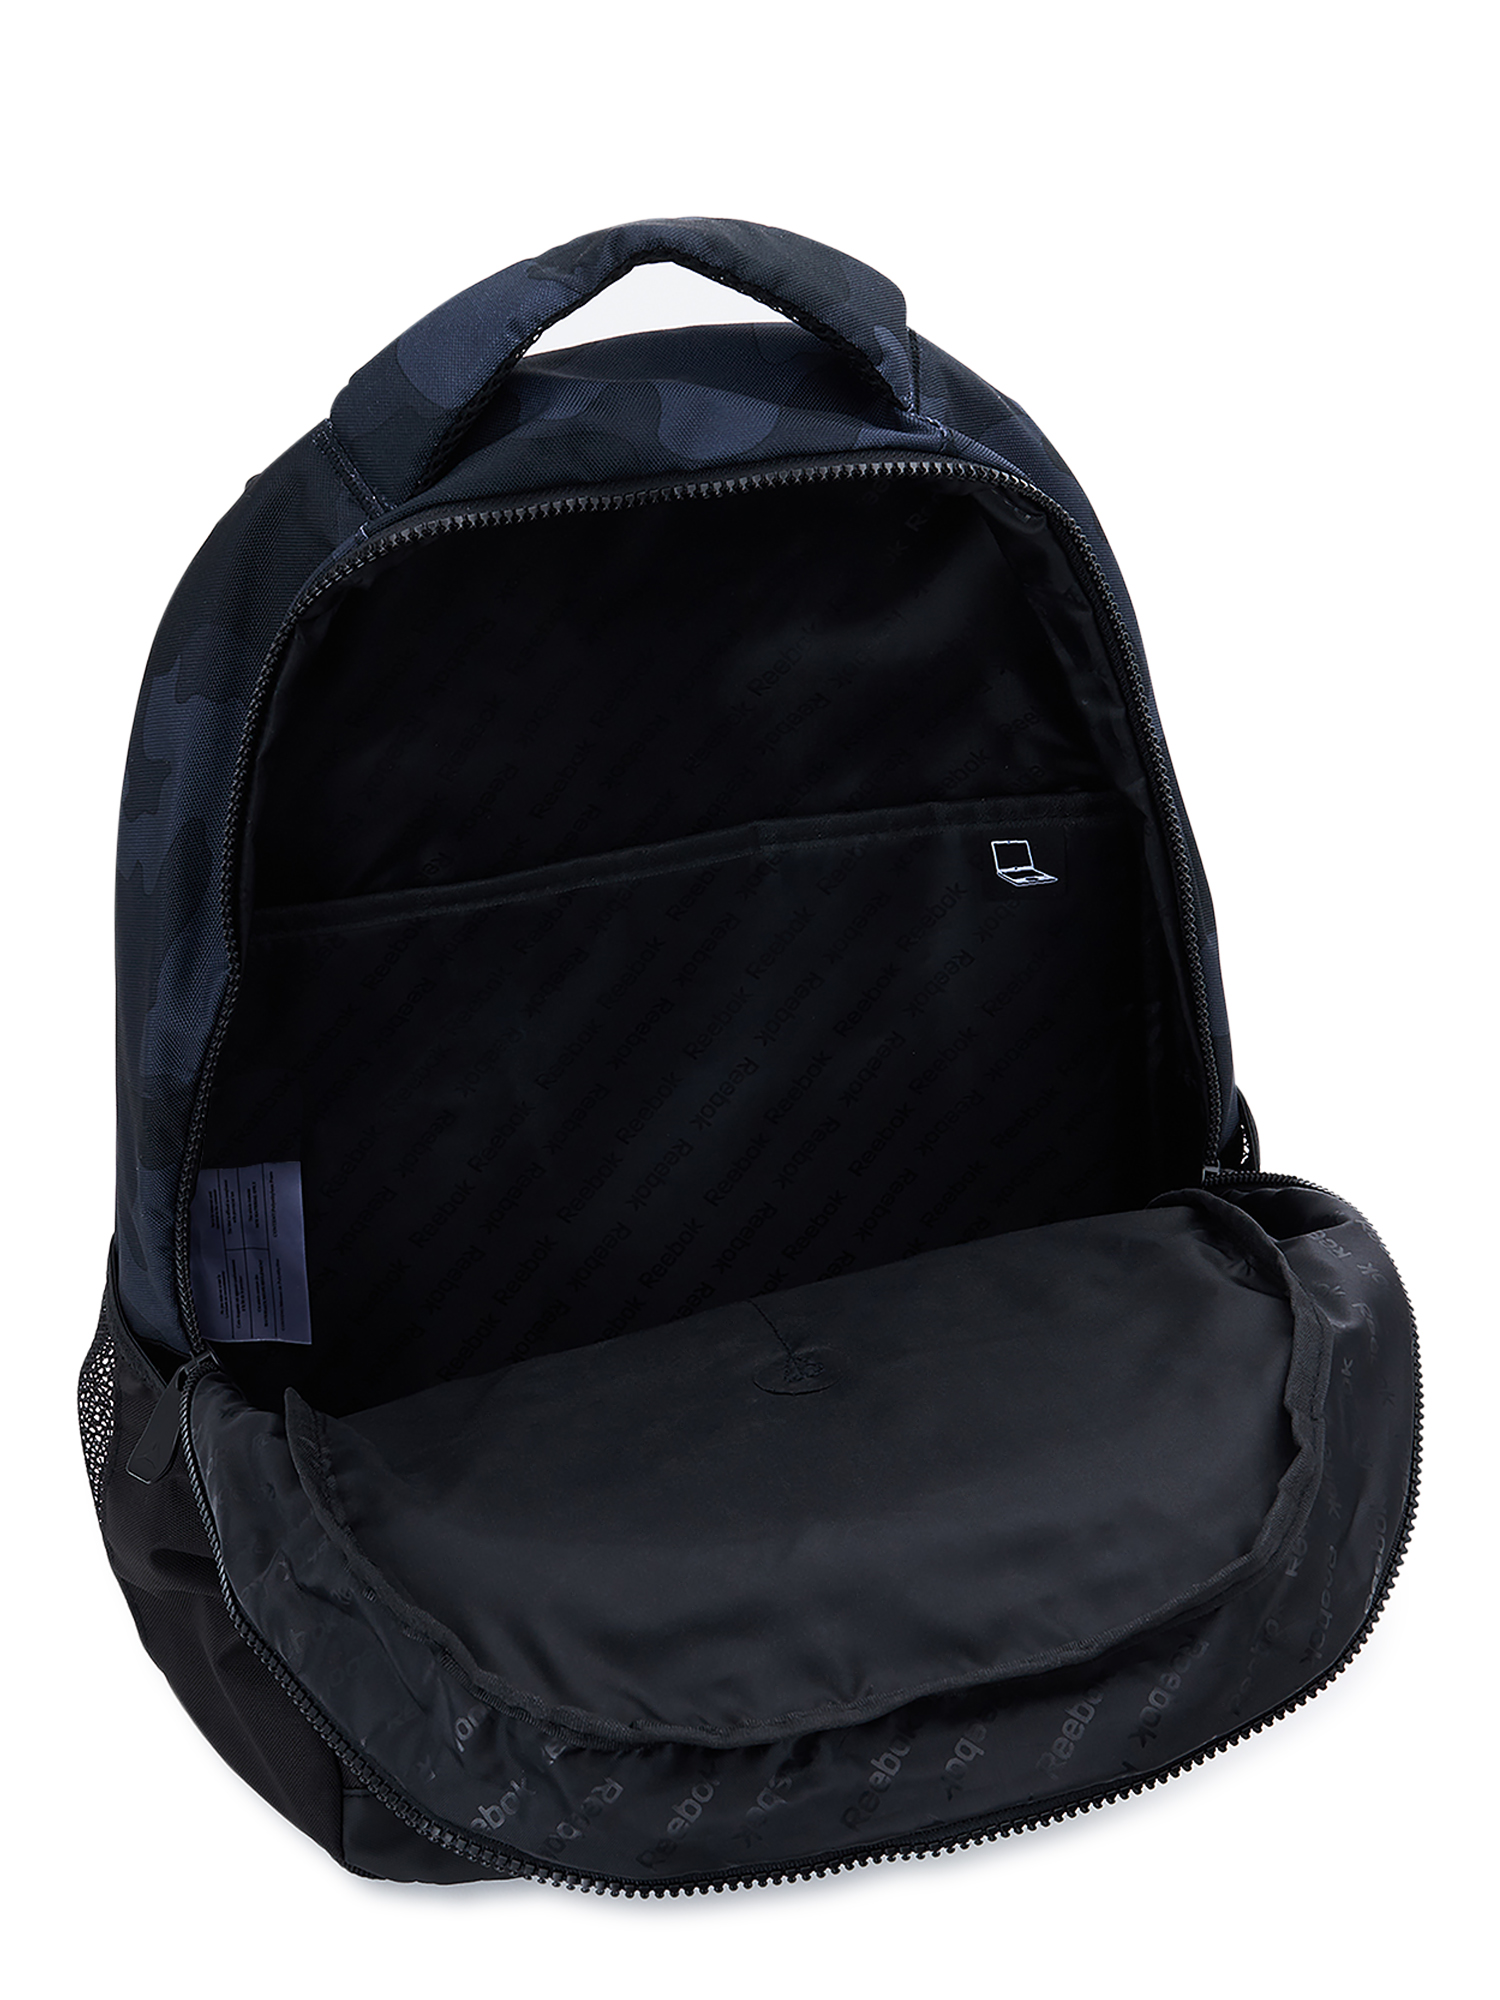 Reebok Unisex Adult Laredo 19.5" Laptop Backpack, Black Camo - image 5 of 5